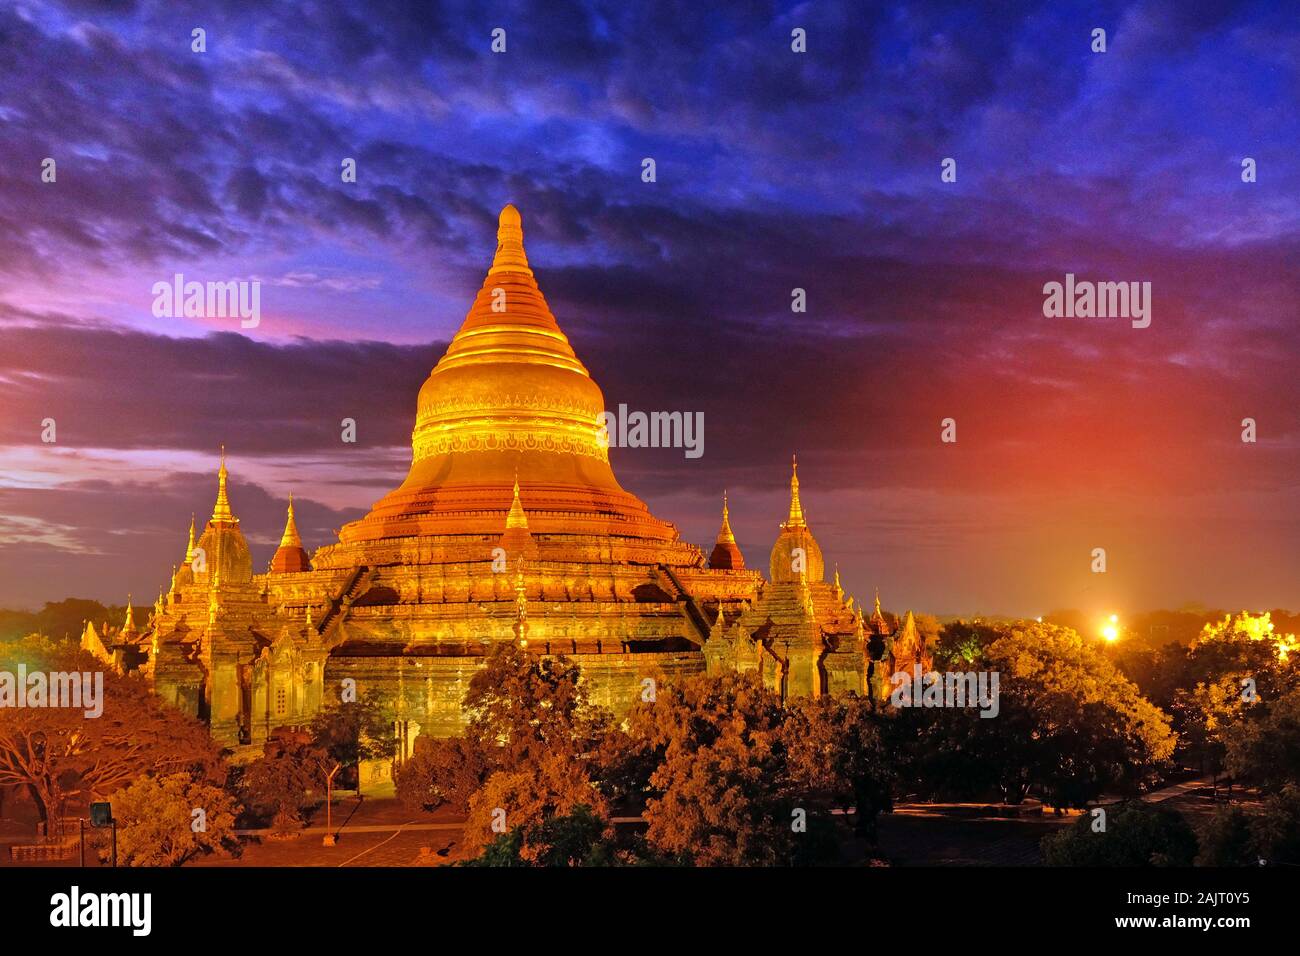 Sunrise Himmel durch dramatische Wolken über alte buddhistische Tempel von Vegetation in Alt Bagan, Myanmar umgeben. Stockfoto